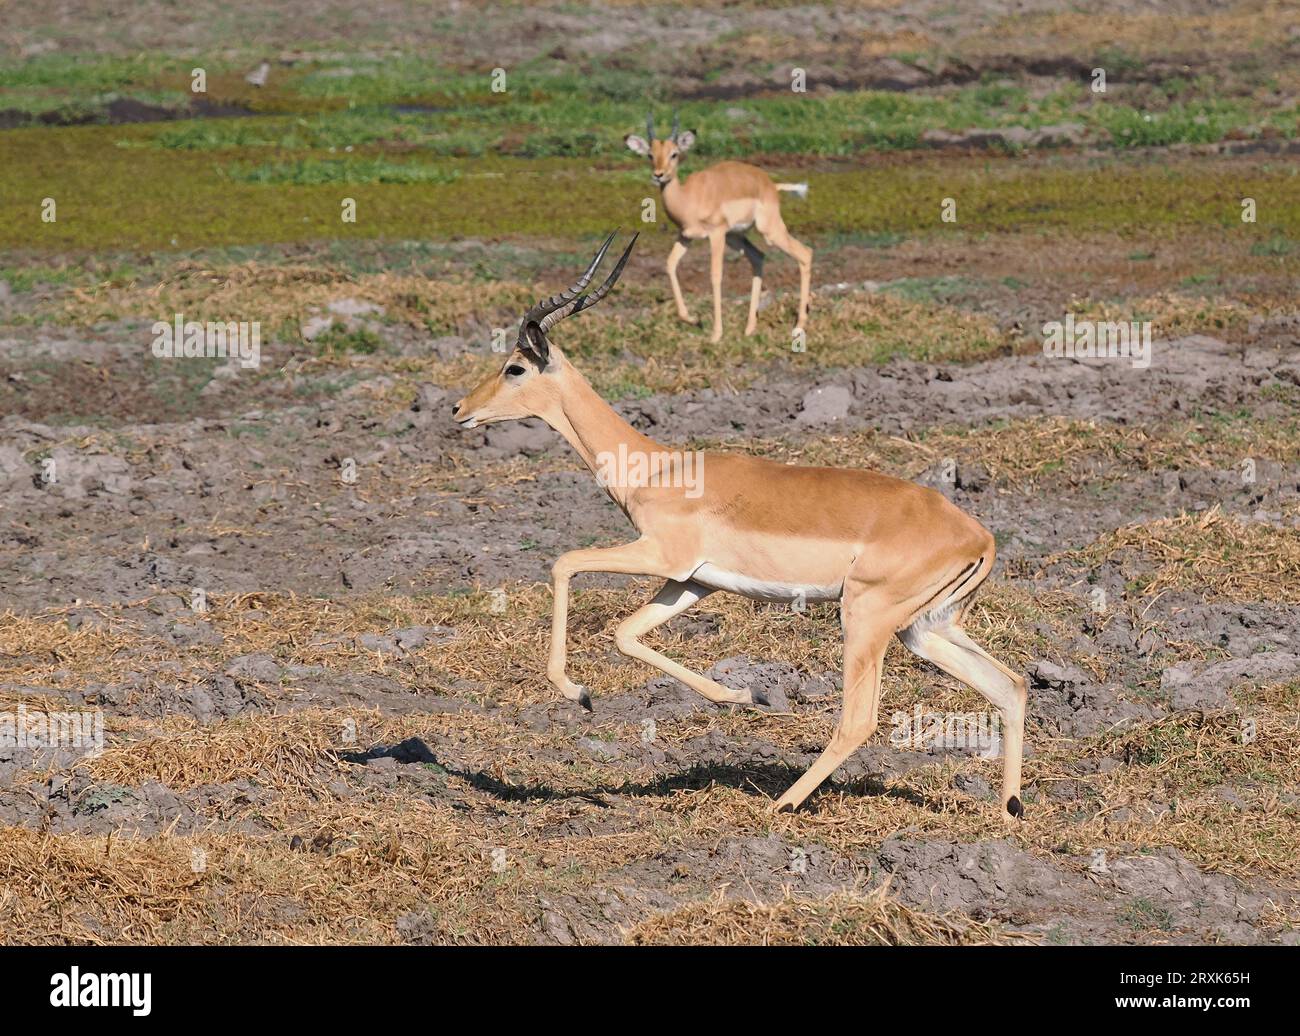 Impala sind eine Ebene oder Waldantilope. Sie sind anmutig in Bewegung und reisen in Sprüngen und Grenzen. Stockfoto